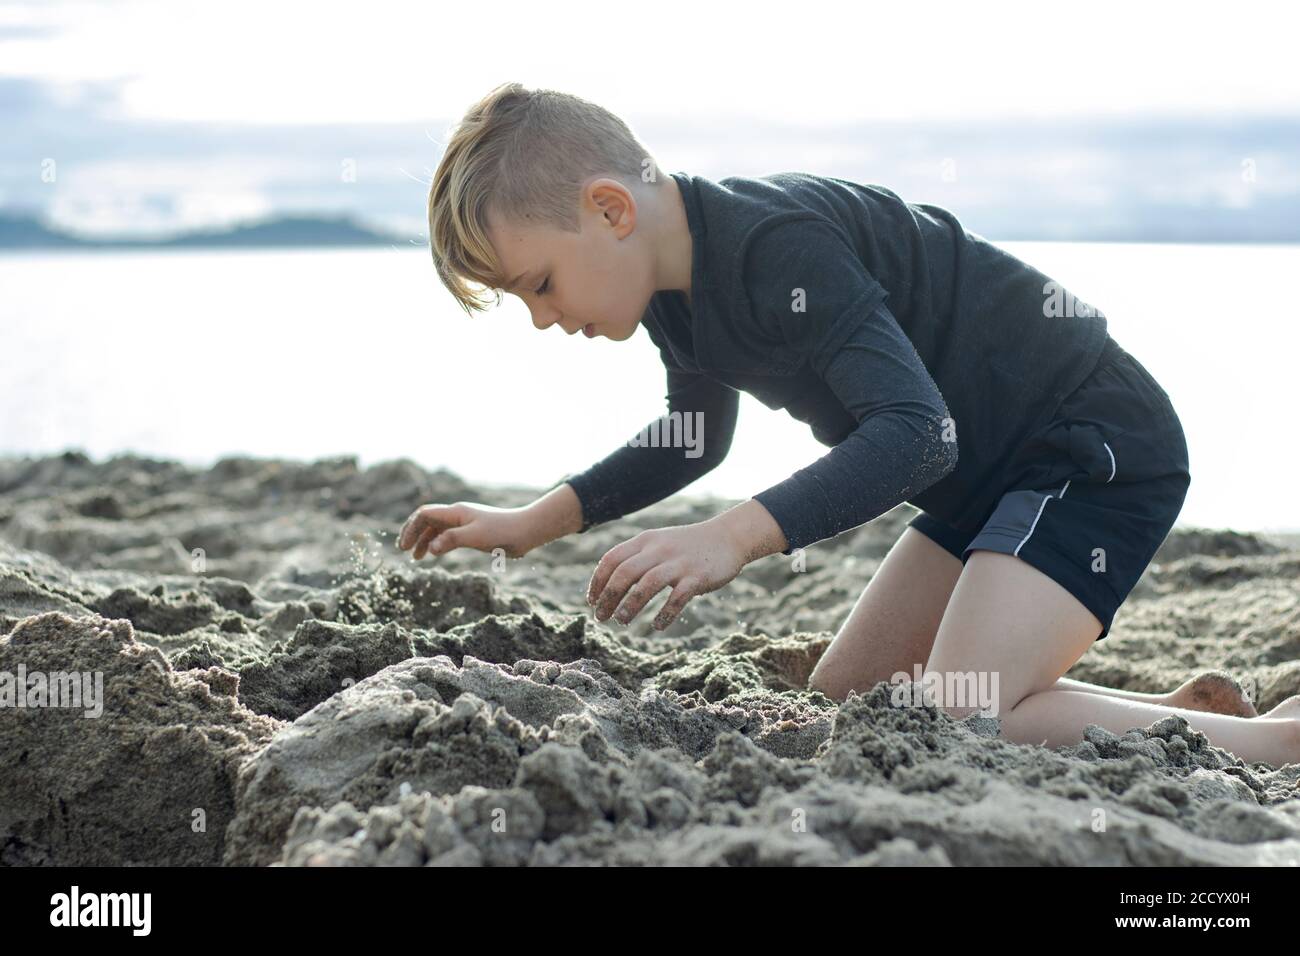 Eine Nahaufnahme eines wunderschönen Jungen, der im Sand am Strand spielt, seine Augen vor Freude verschlossen Stockfoto